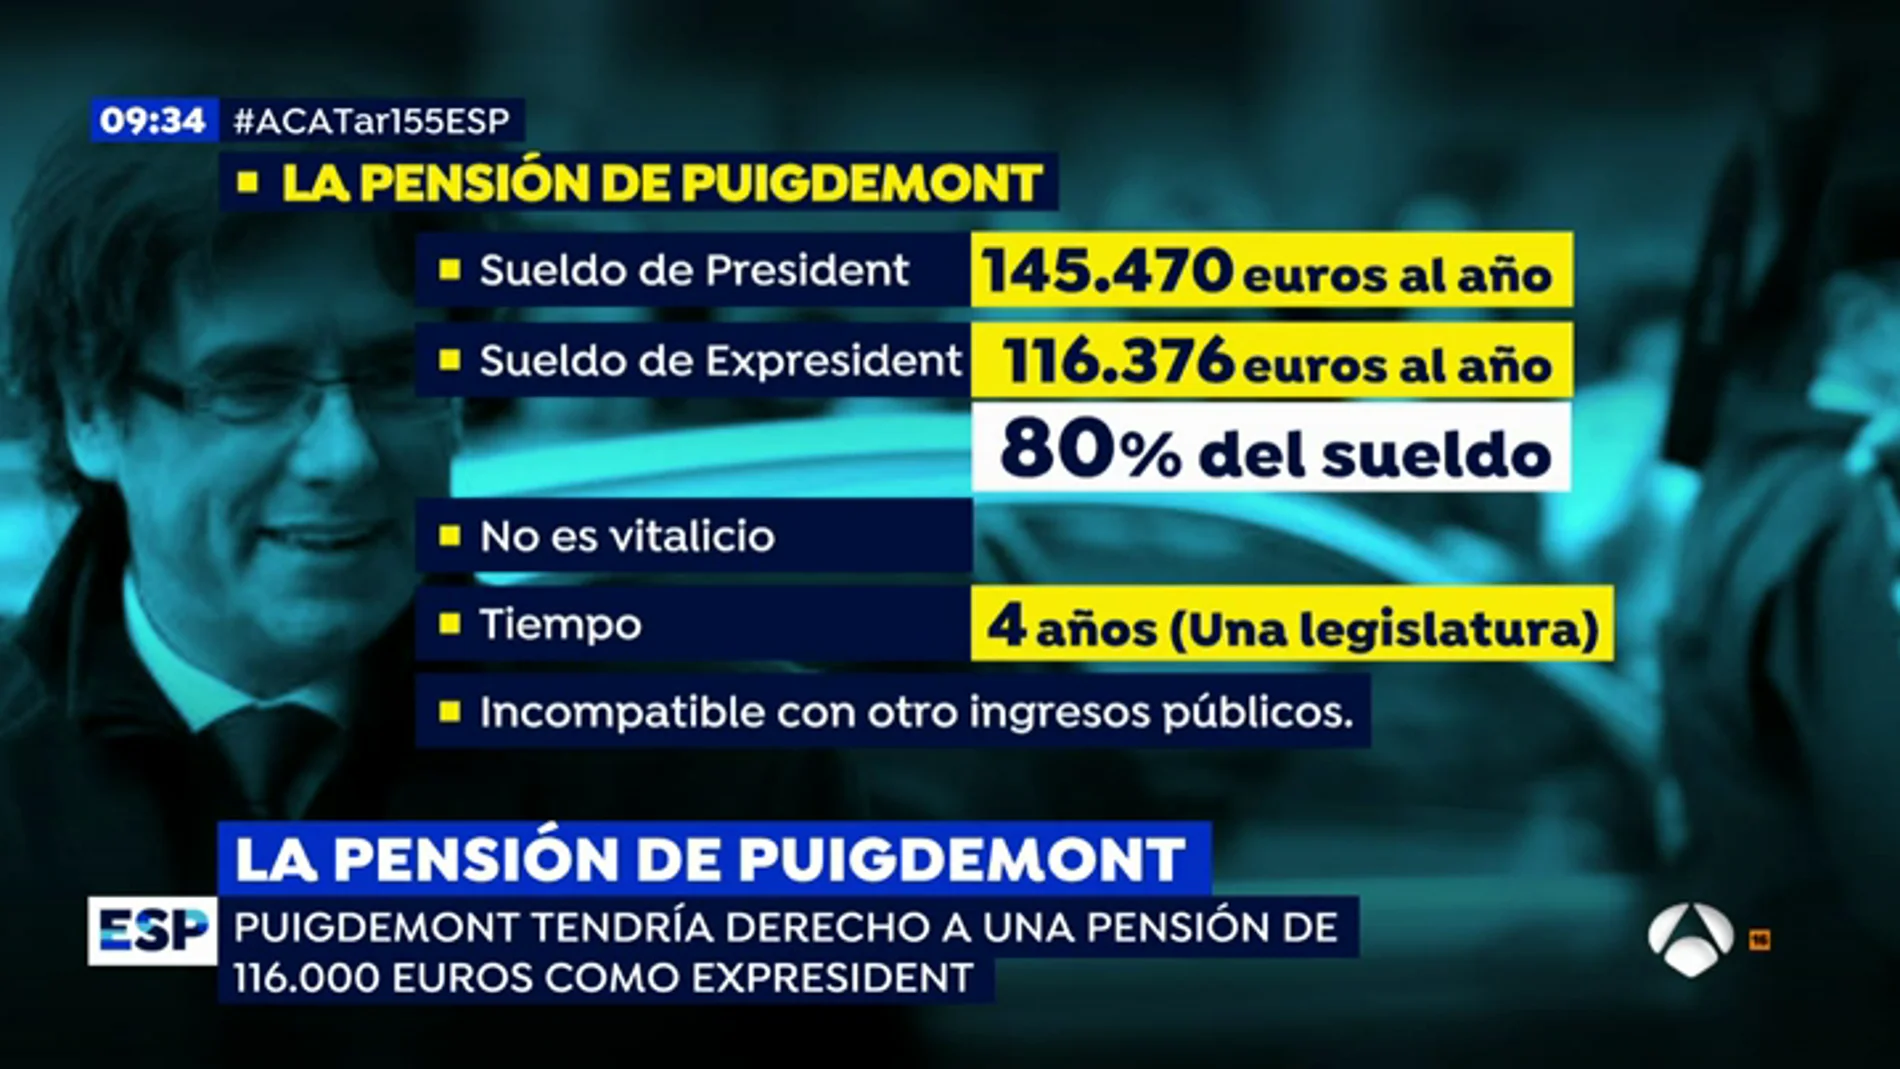 EP pension Puigdi